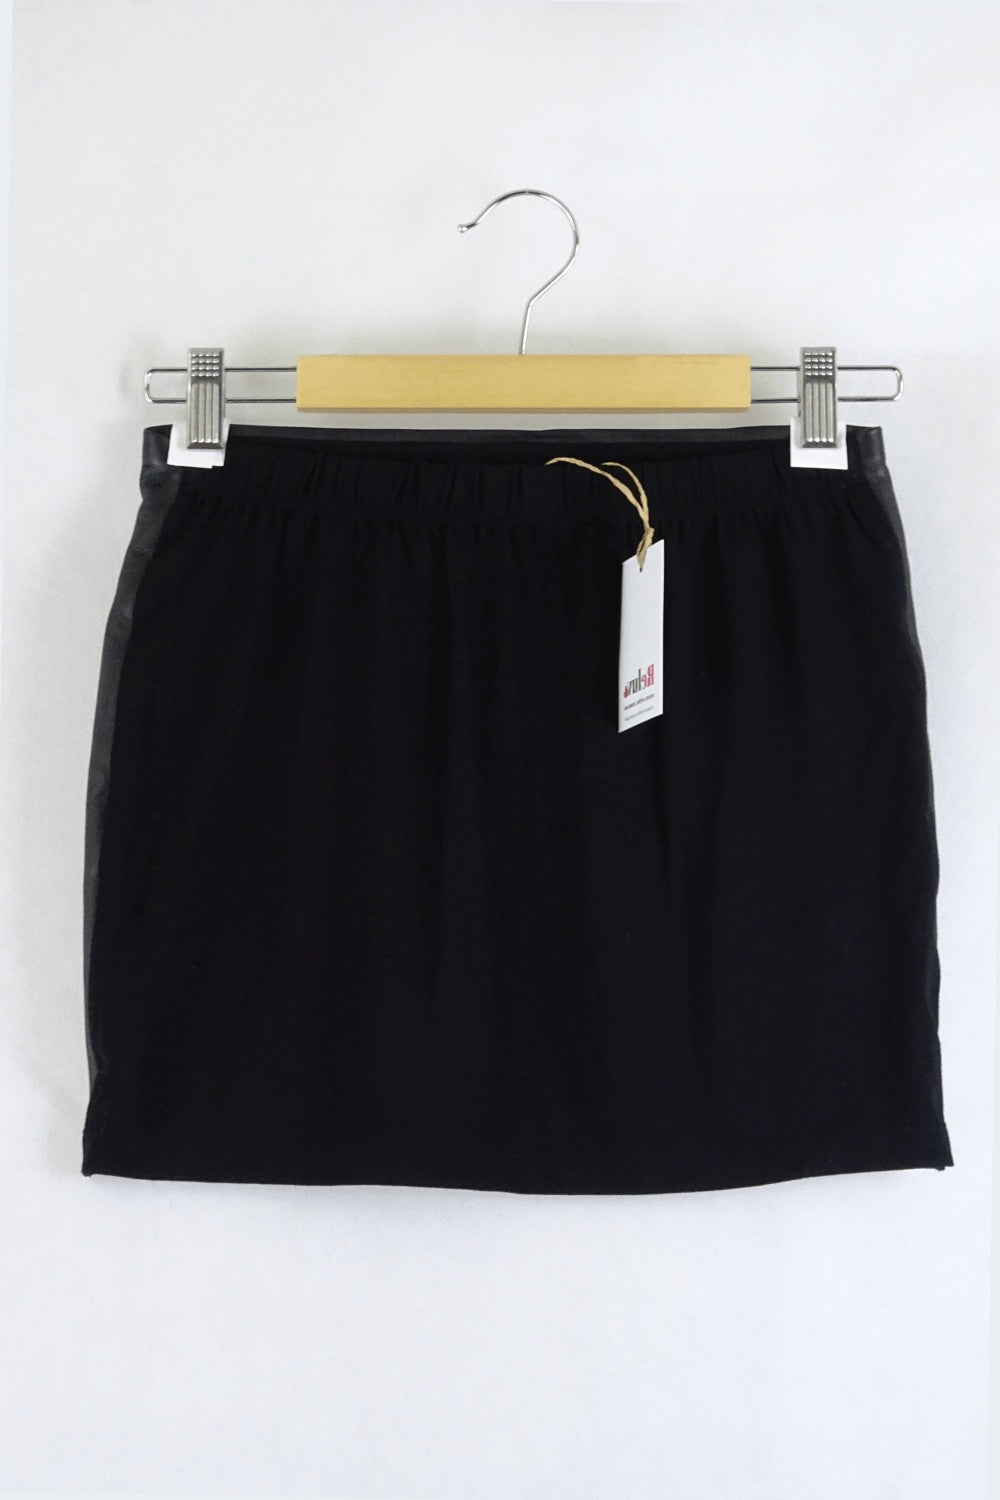 Origen Black Leather Skirt S